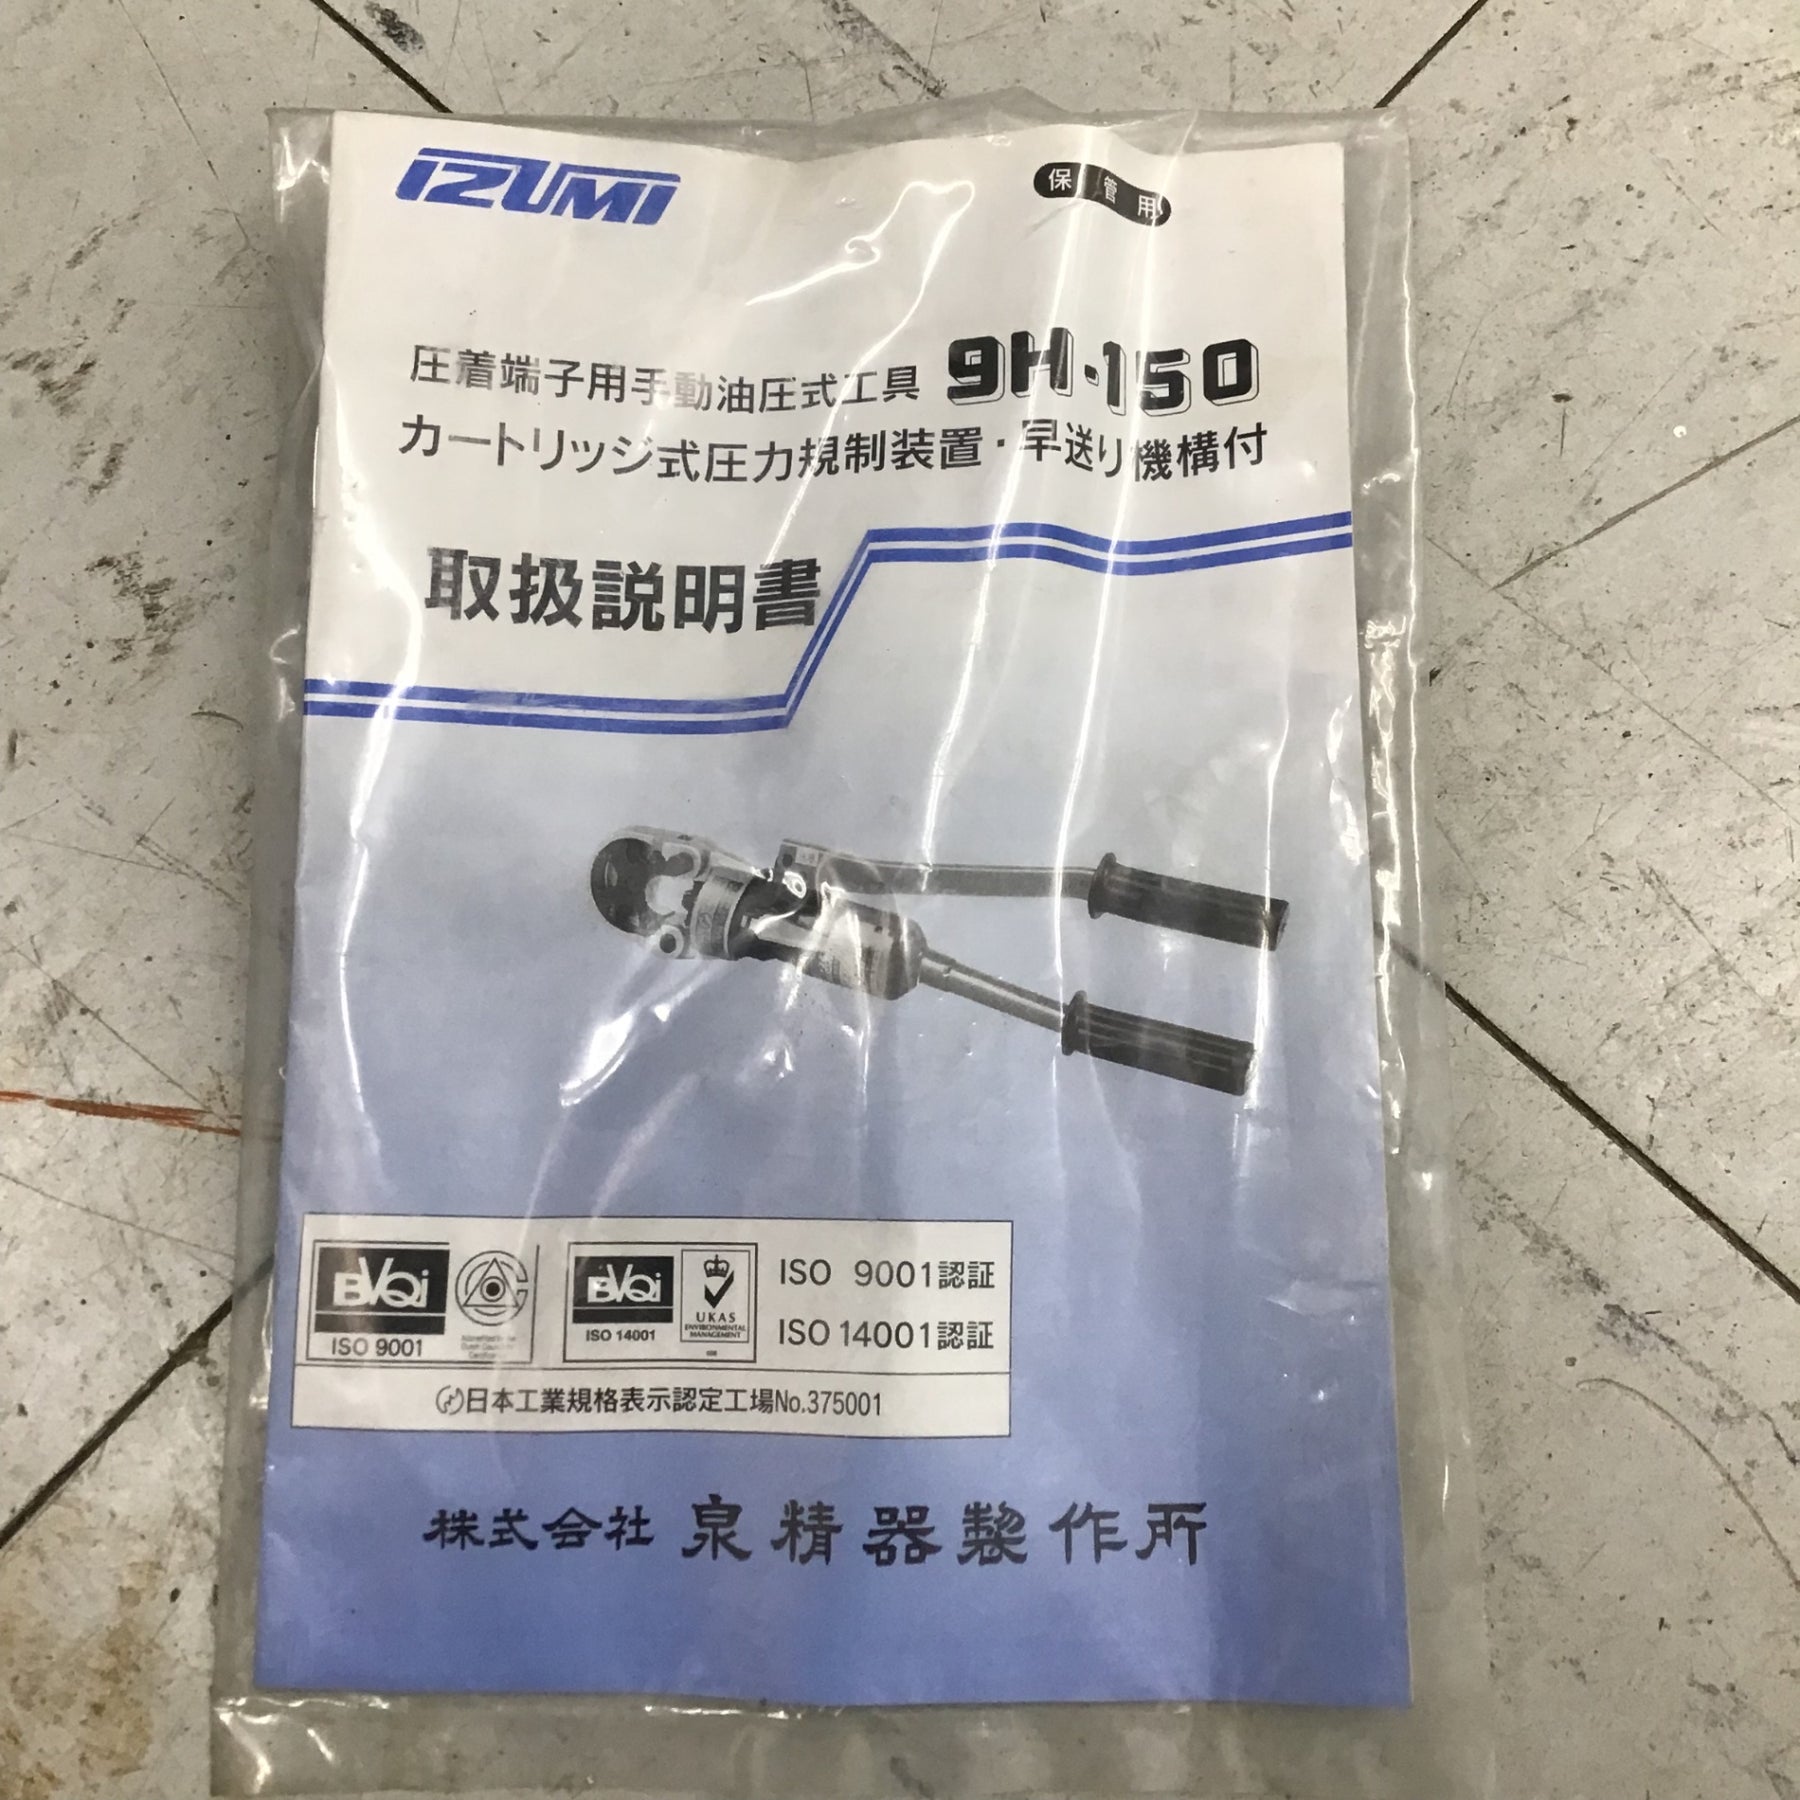 泉精器(IZUMI) 手動油圧式圧着工具 9H-150【鴻巣店】 – アクトツール 